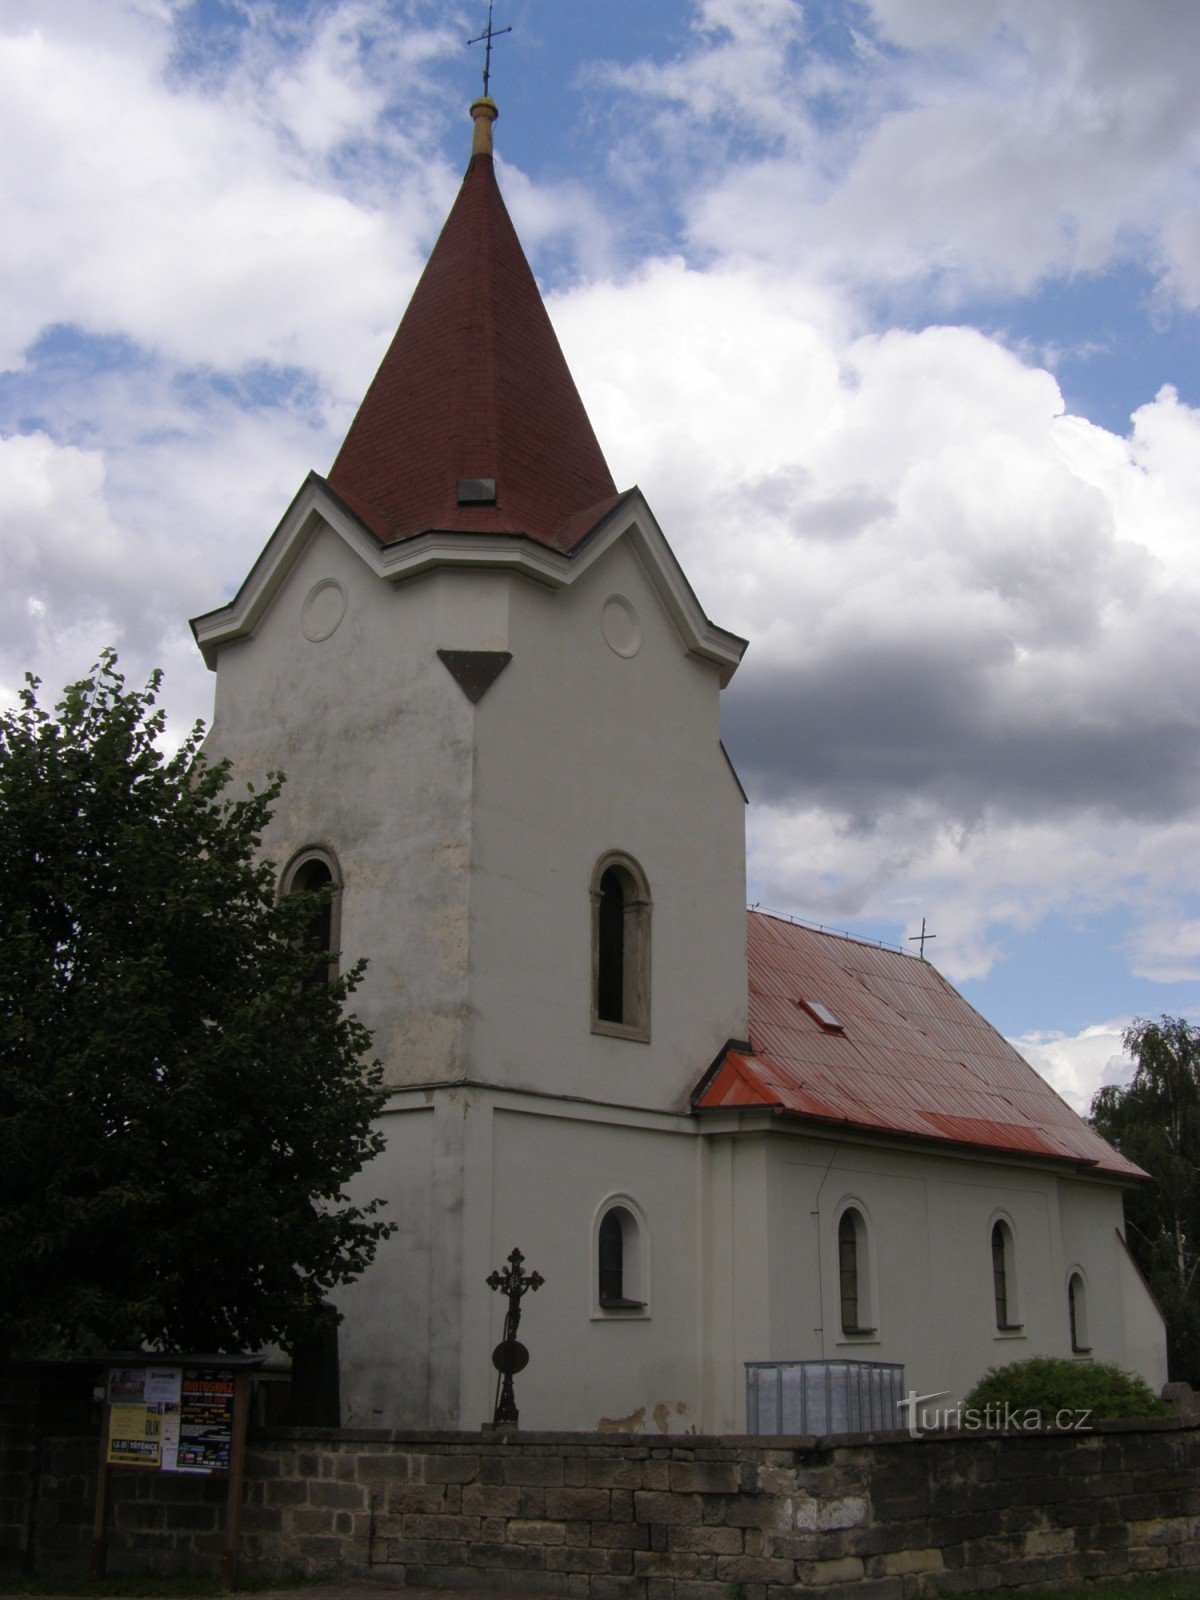 Oude stad - kerk van St. Franciscus